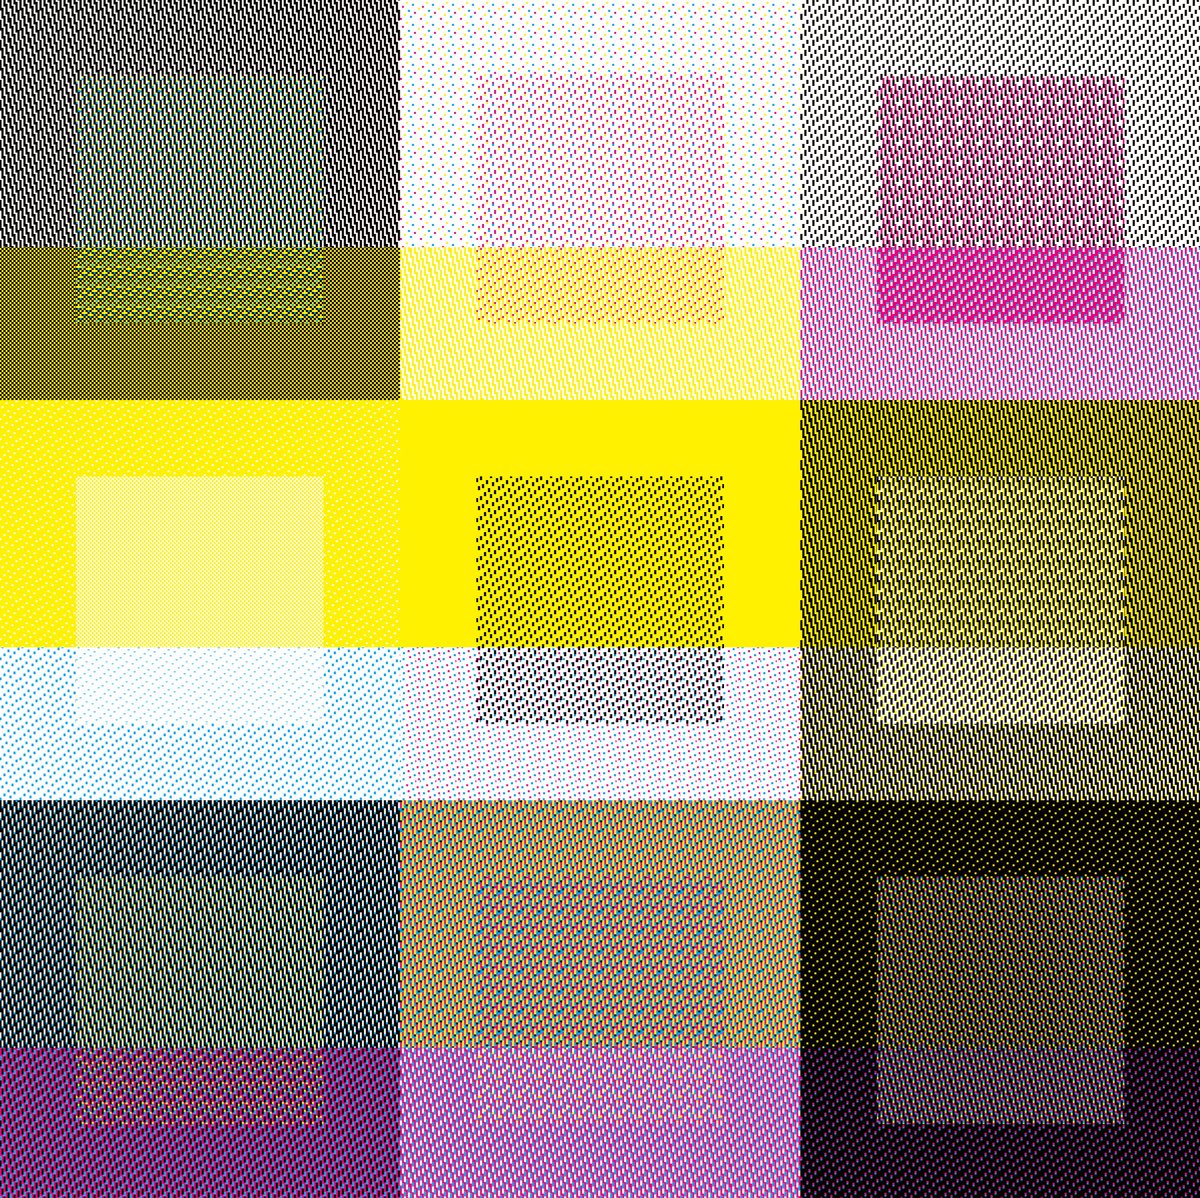 Color Patch Matrix_#1~9 by Decheng Cui